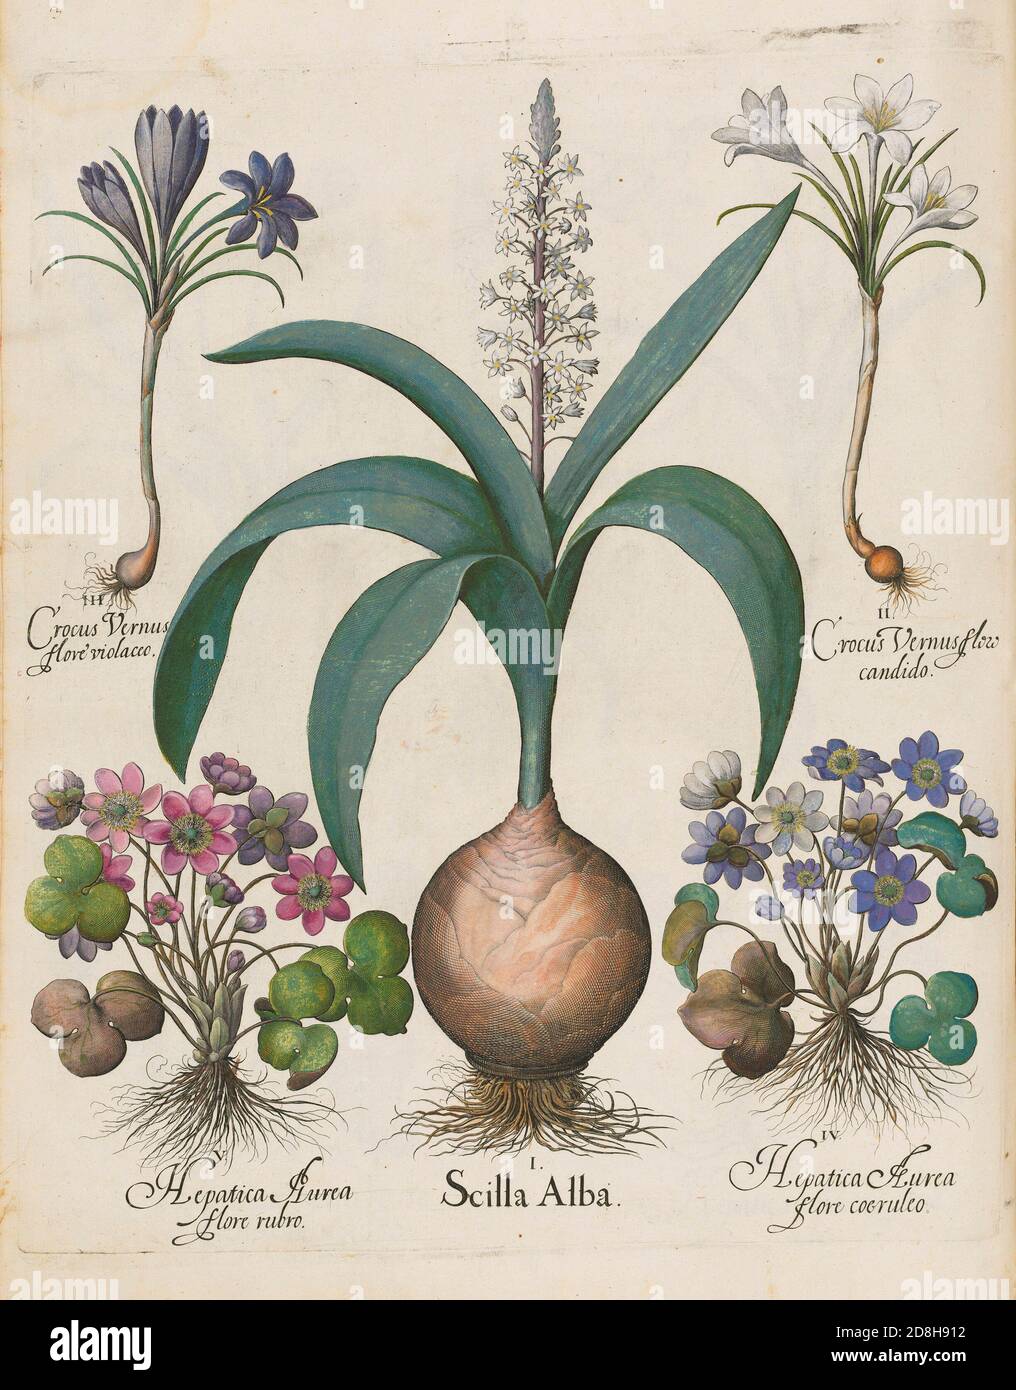 Crocus Vernus Flore Violacco. Scilla Alba, botanische Illustration von Basil Besler aus der Hortus Eystettensis, einem Codex von Besler aus dem Jahr 1613. Stockfoto